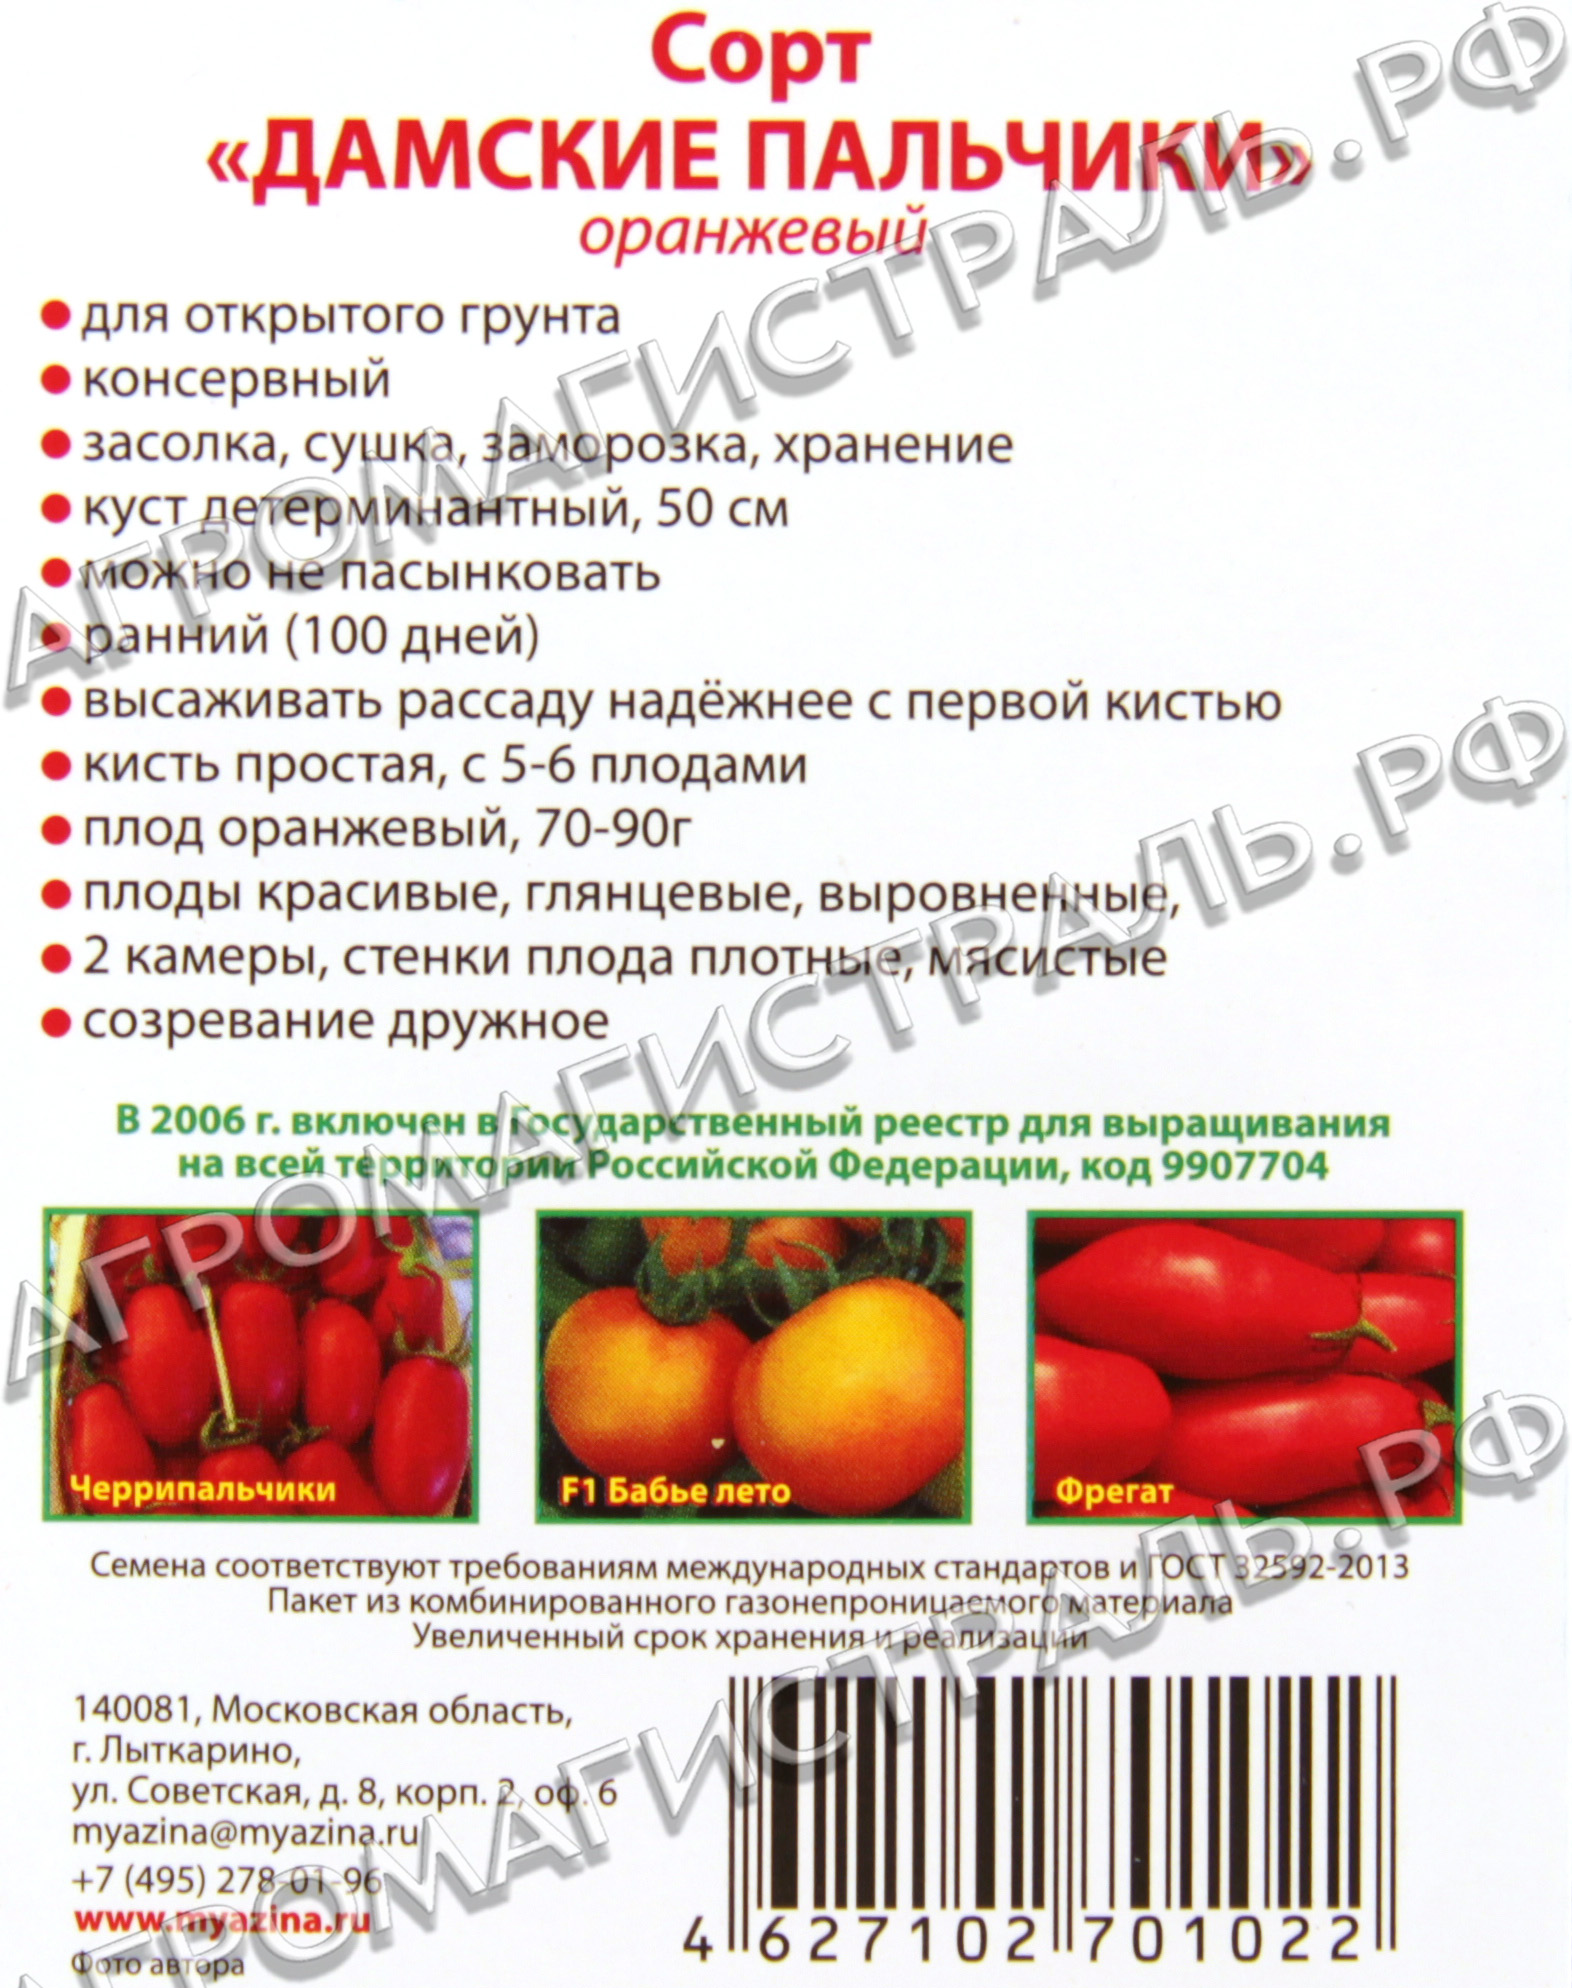 Сорта томатов: что такое детерминантный, полудетерминатный и супердетерминантный вид, их отличия и особенности, а также их преимущества и недостатки русский фермер